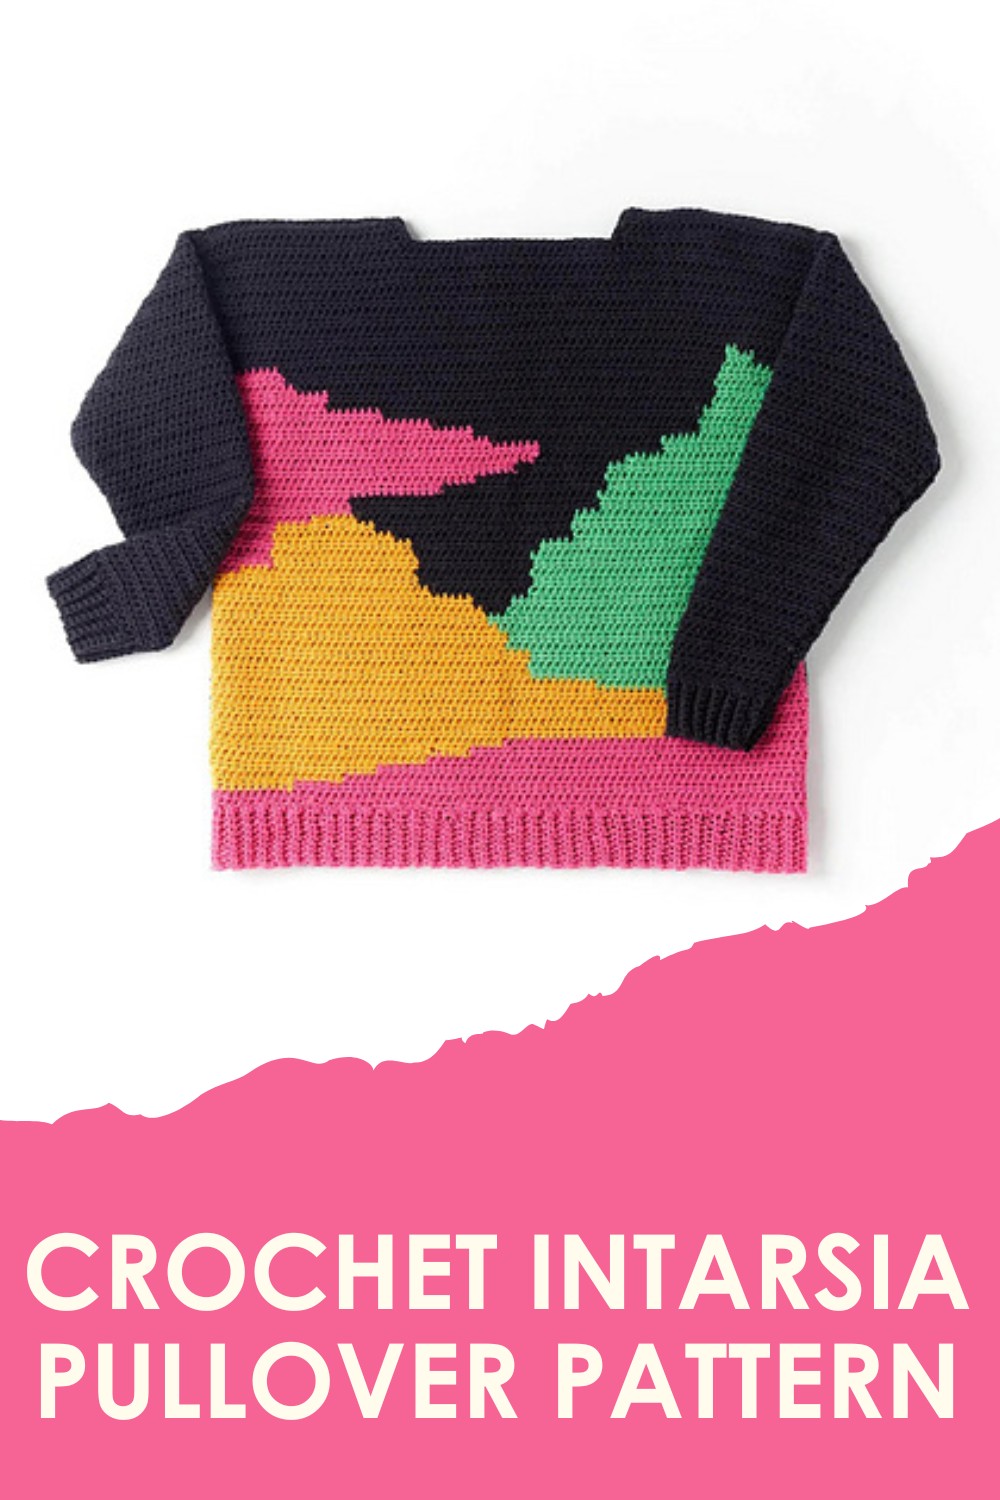 Crochet Intarsia Pullover Pattern